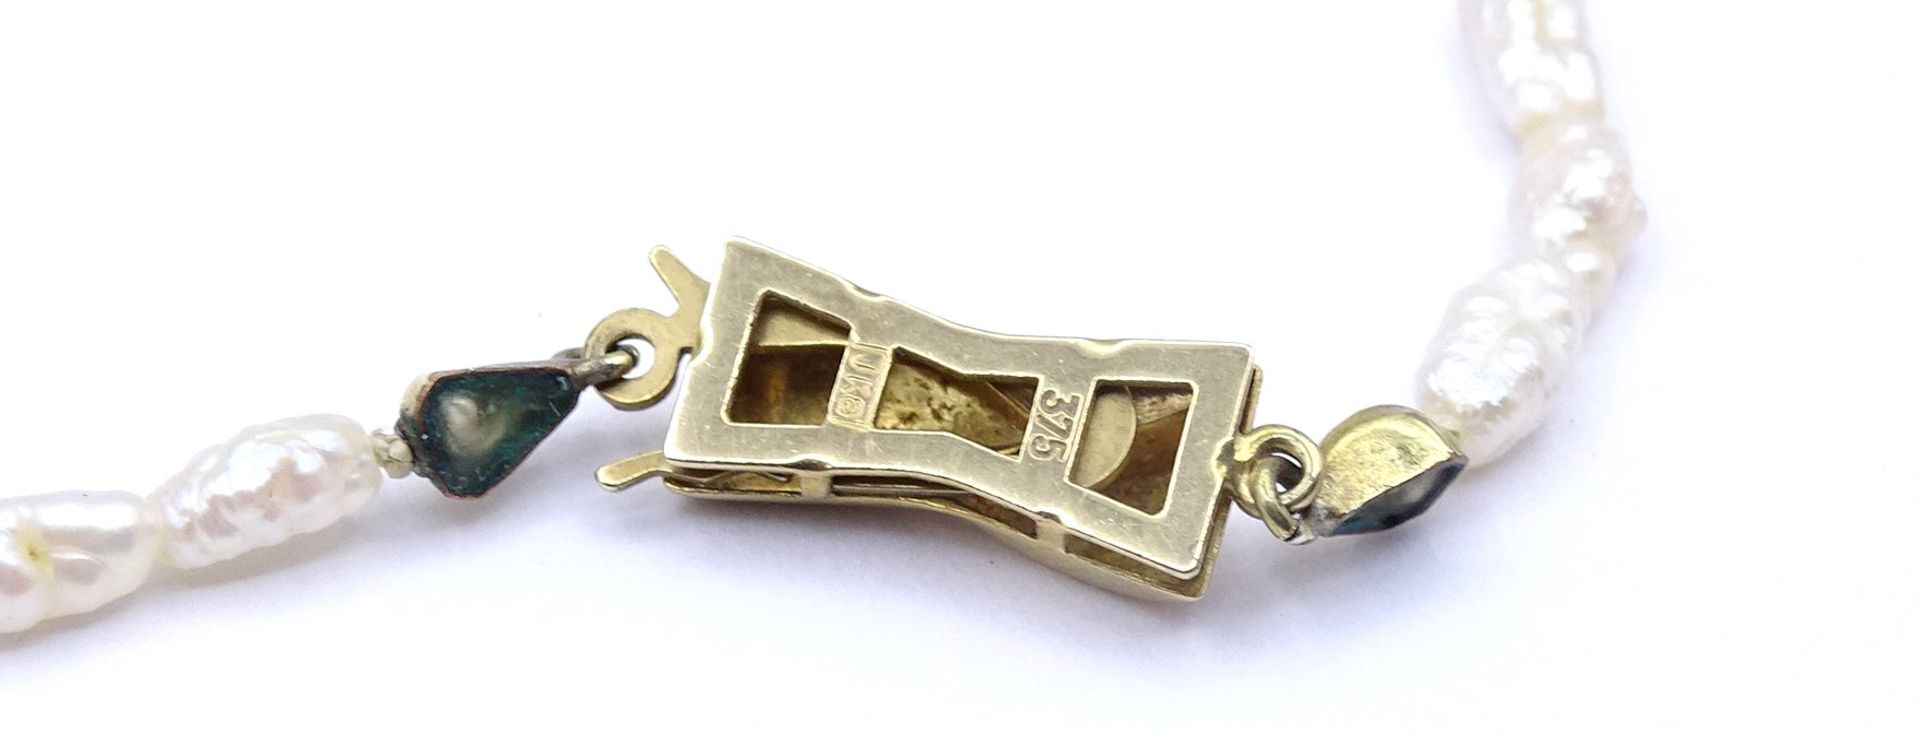 SW - Perlen Halskette mit Goldverschluss 375/000, L. 41cm - Image 6 of 6